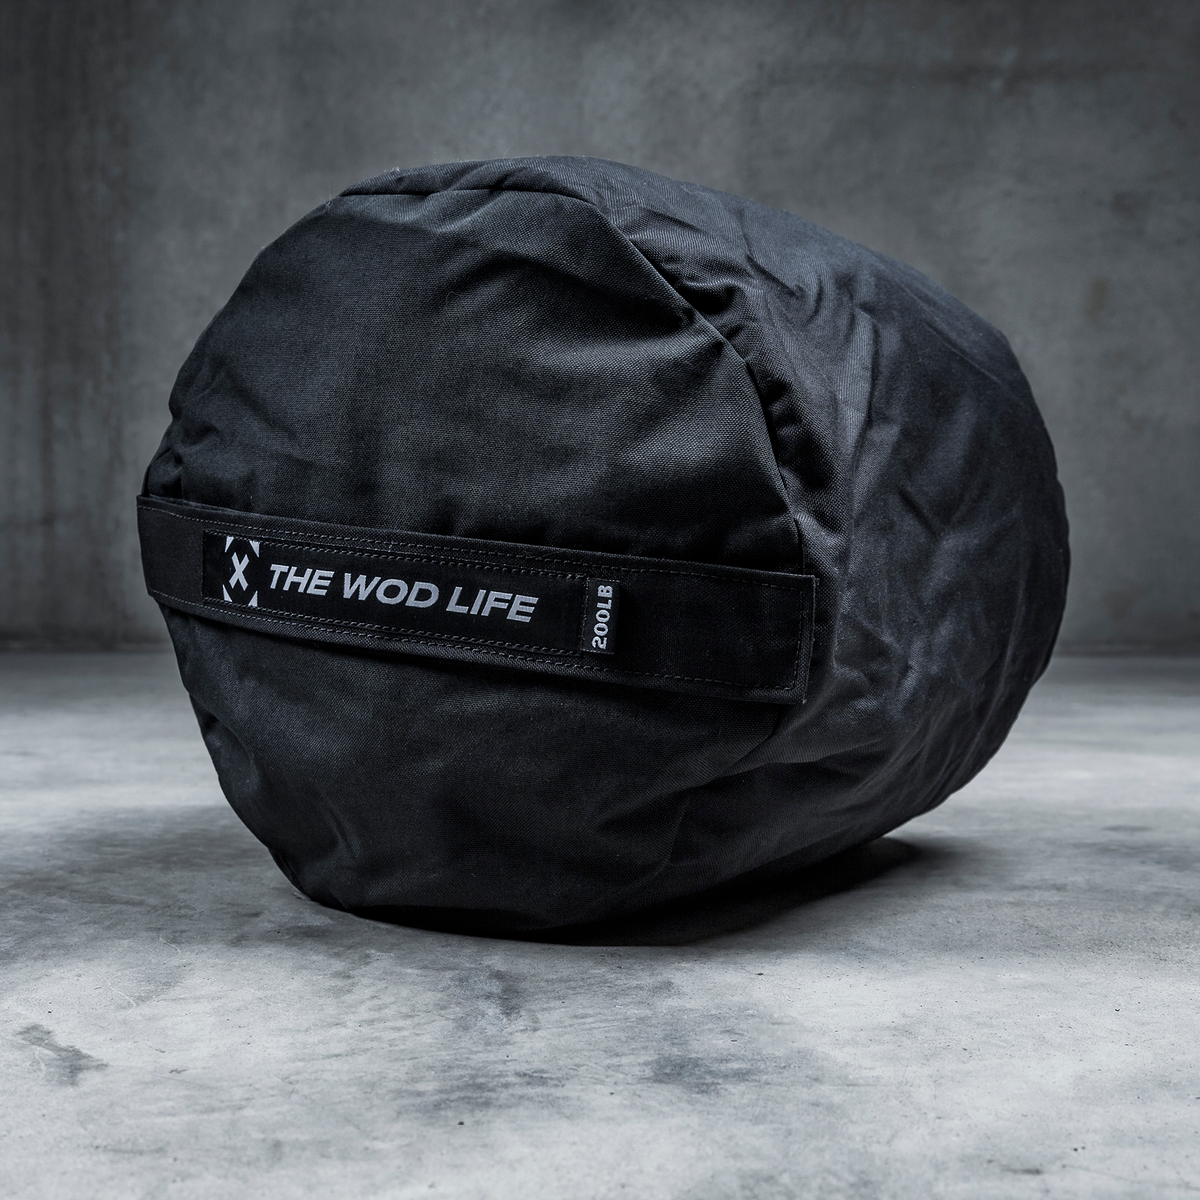 Sandbag Workout 200 LB (90 kg)